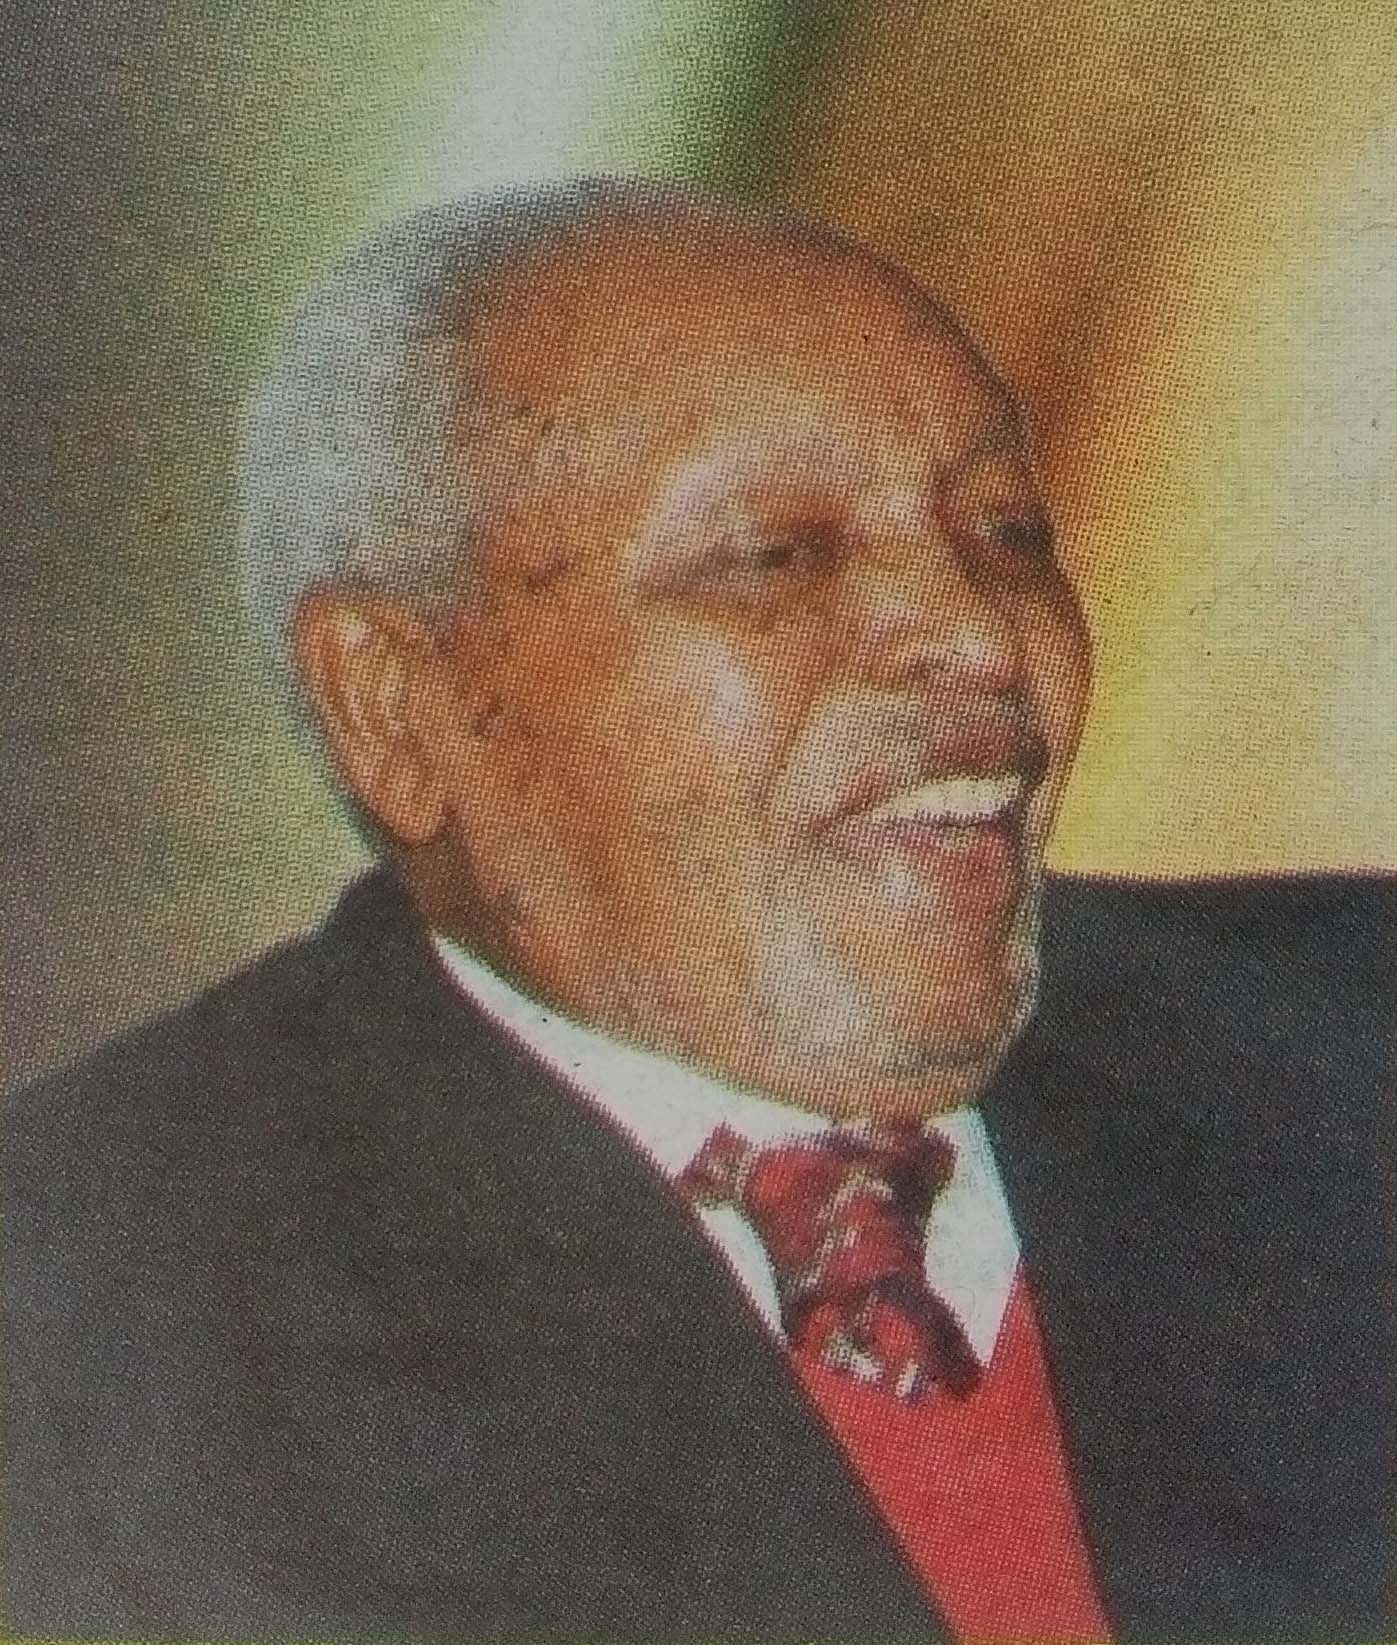 Obituary Image of Hon. Dr. Munyua Waiyaki E.G.H, B.Sc, MB, CH.B, M.A